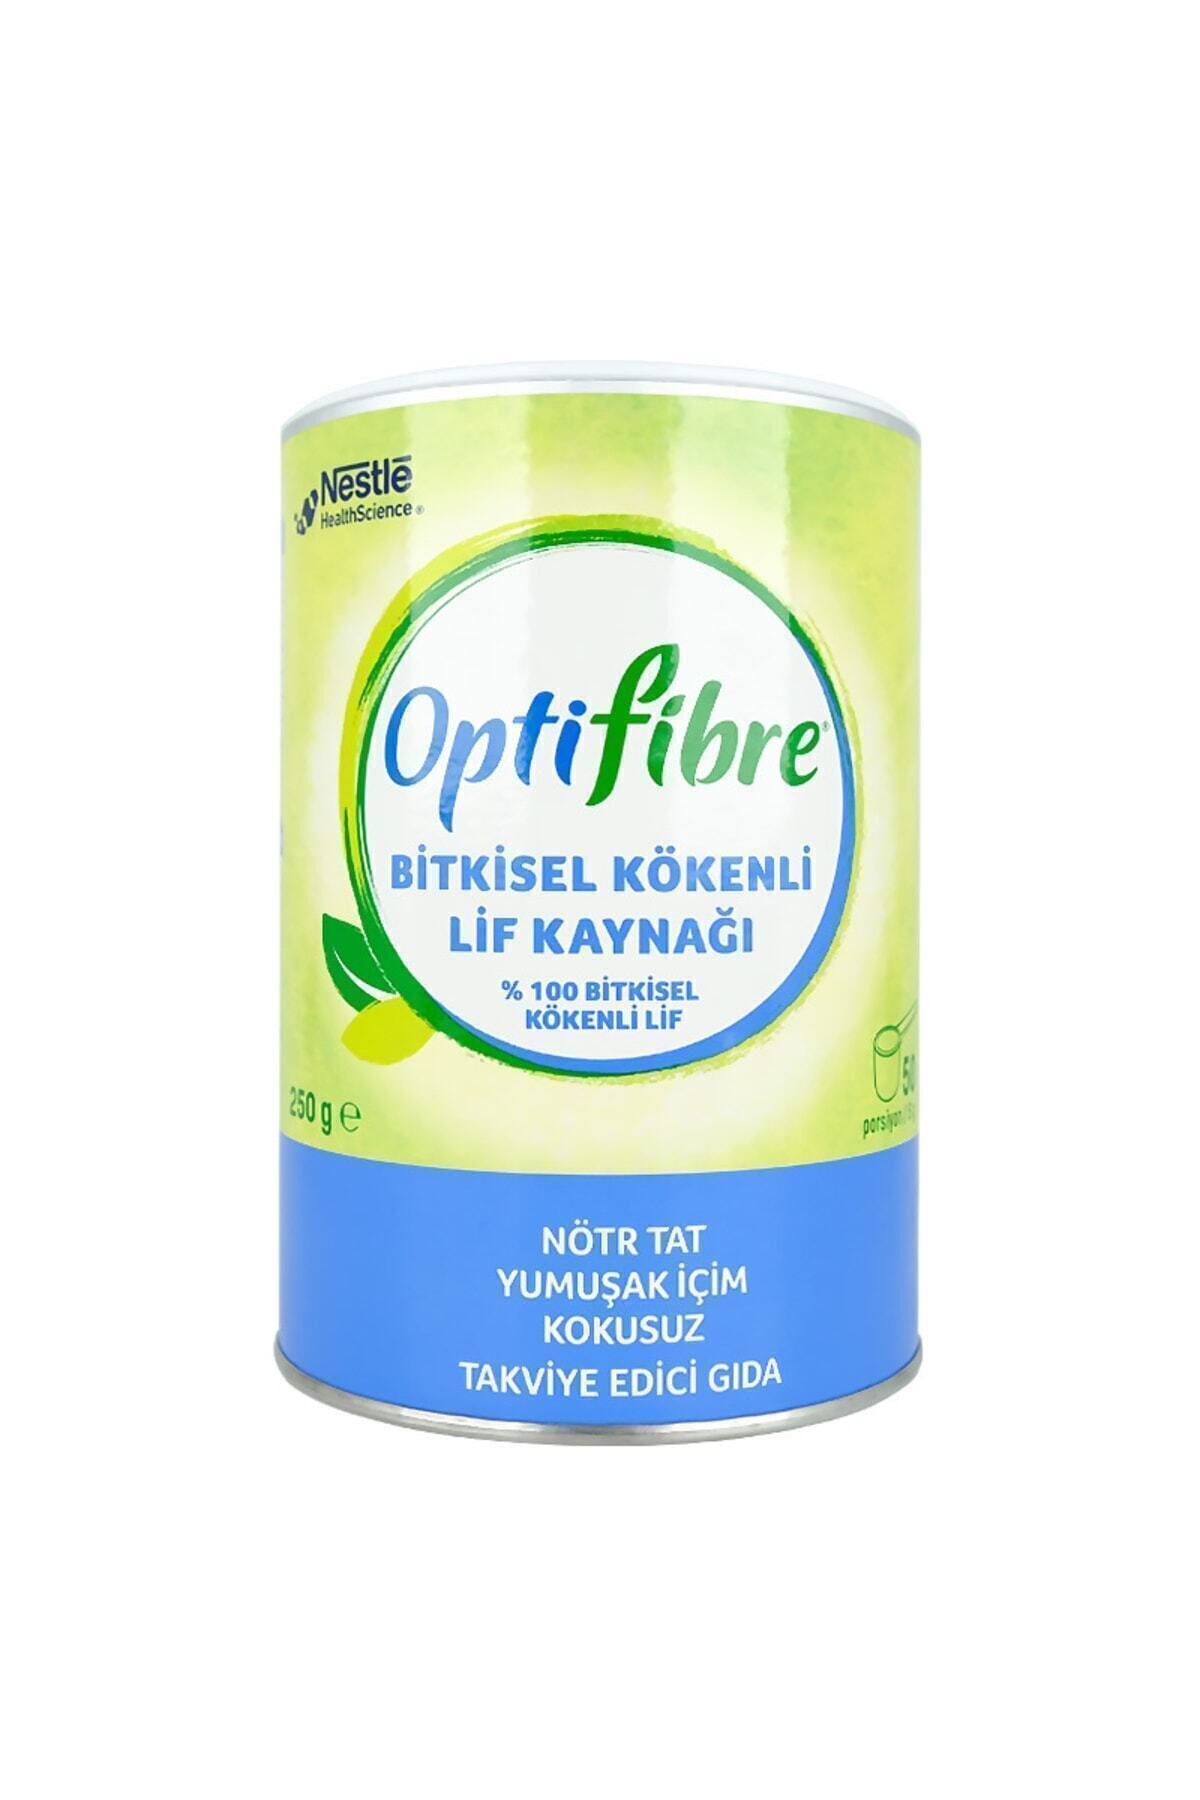 OptiFibre Nestle Bitkisel Kökenli Lif Kaynağı Takviye Edici Gıda 250 gr